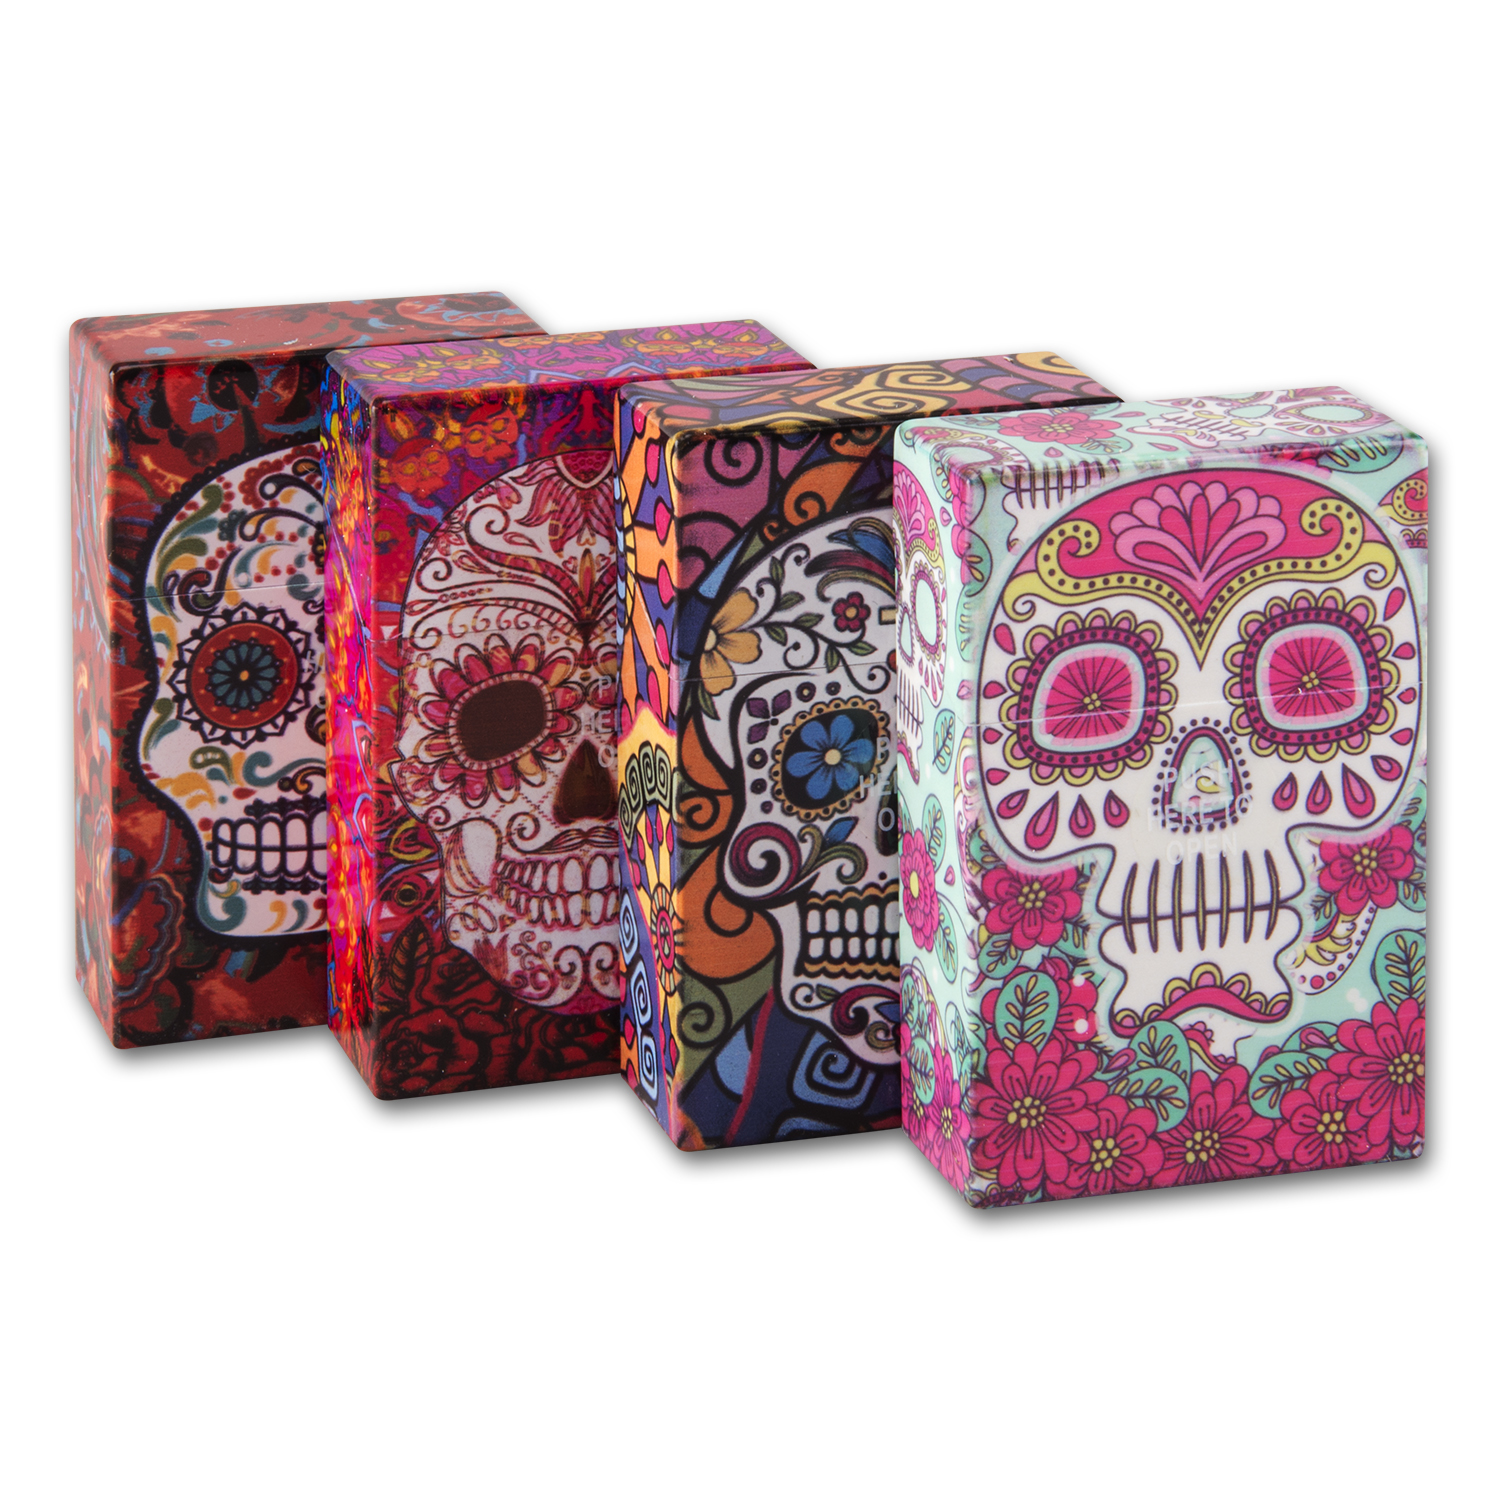 Zigarettenbox Kunststoff CHAMP (12) Skull 4 Farben sortiert